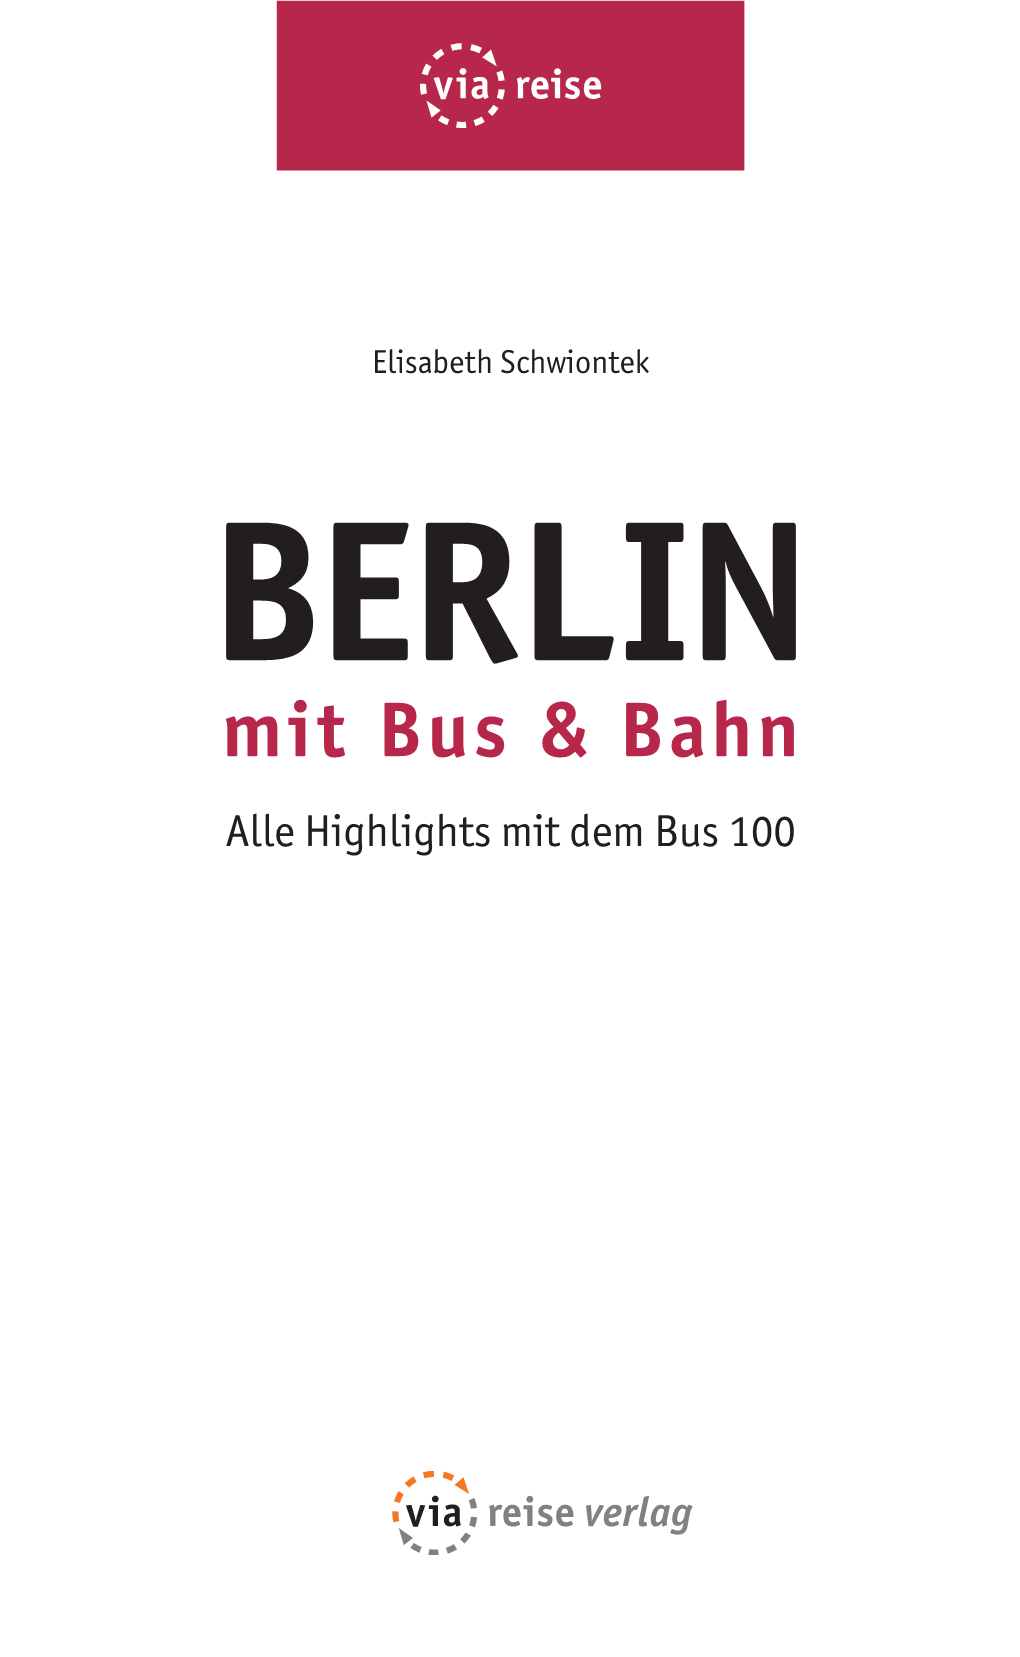 Berlin Mit Bus & Bahn